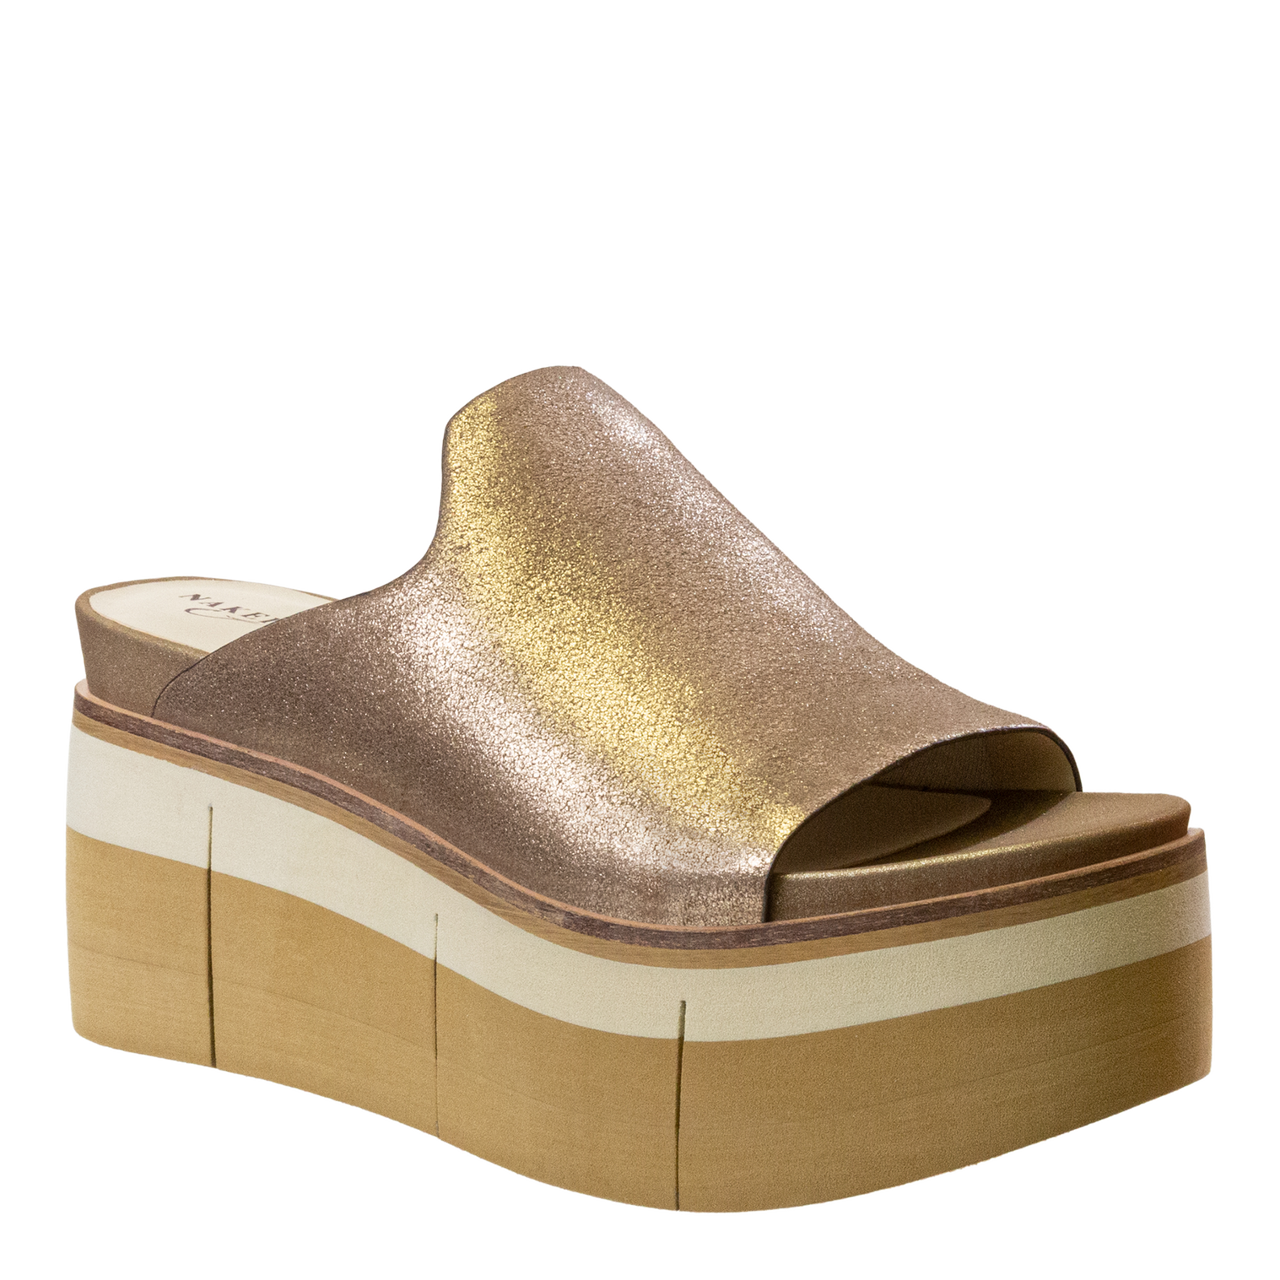 NAKED FEET - FLOW in GOLD Platform Sandals